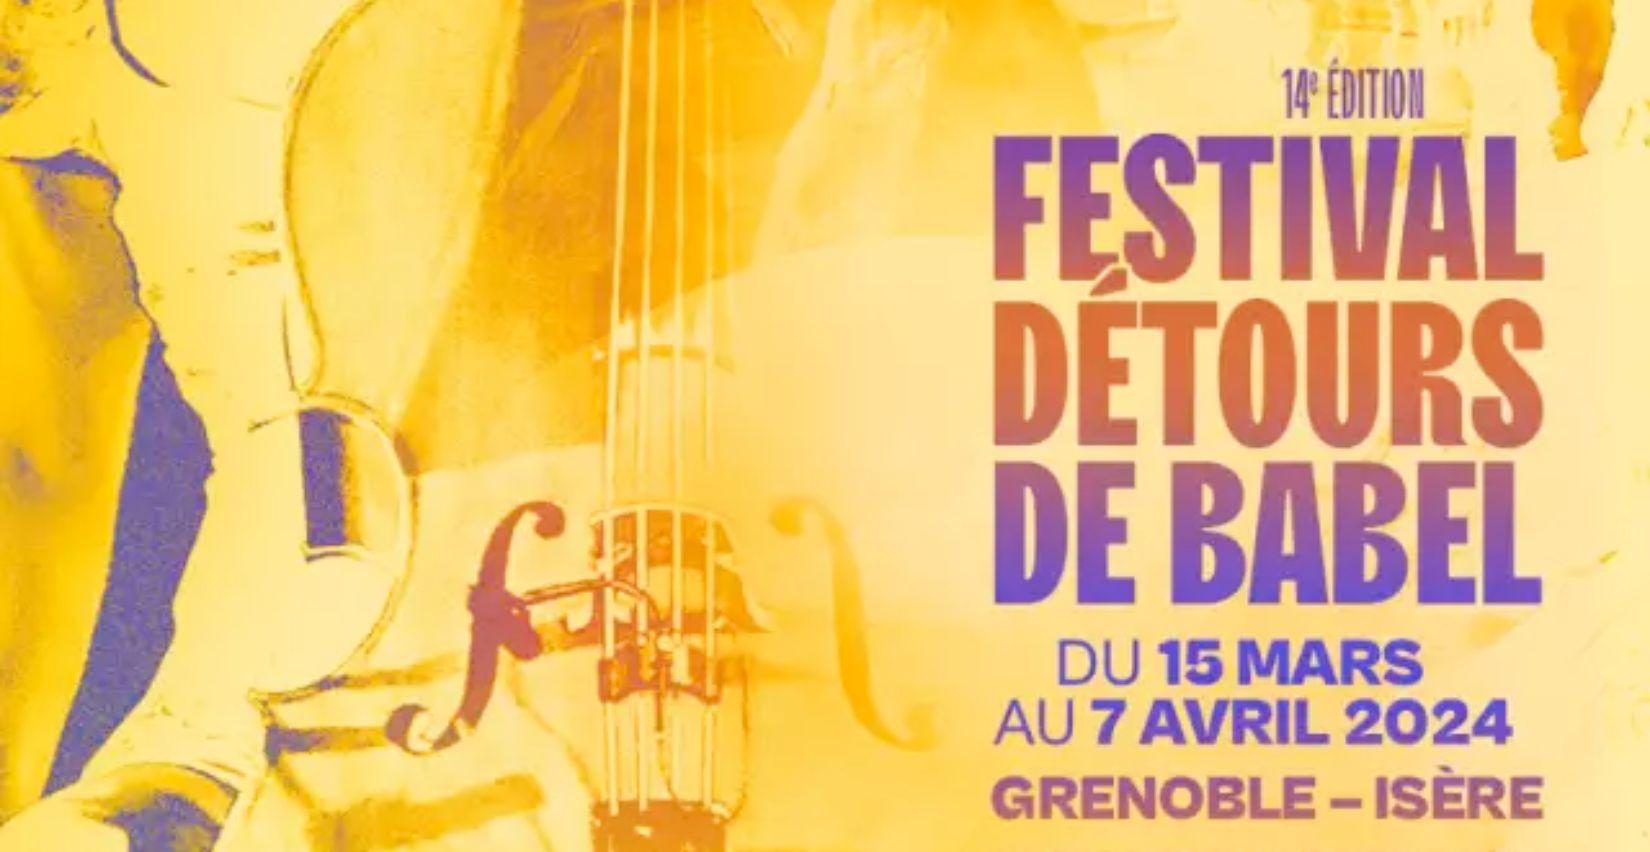 "Les Détours de Babel", festival de musiques du monde, jazz et musiques nouvelles - Grenoble 